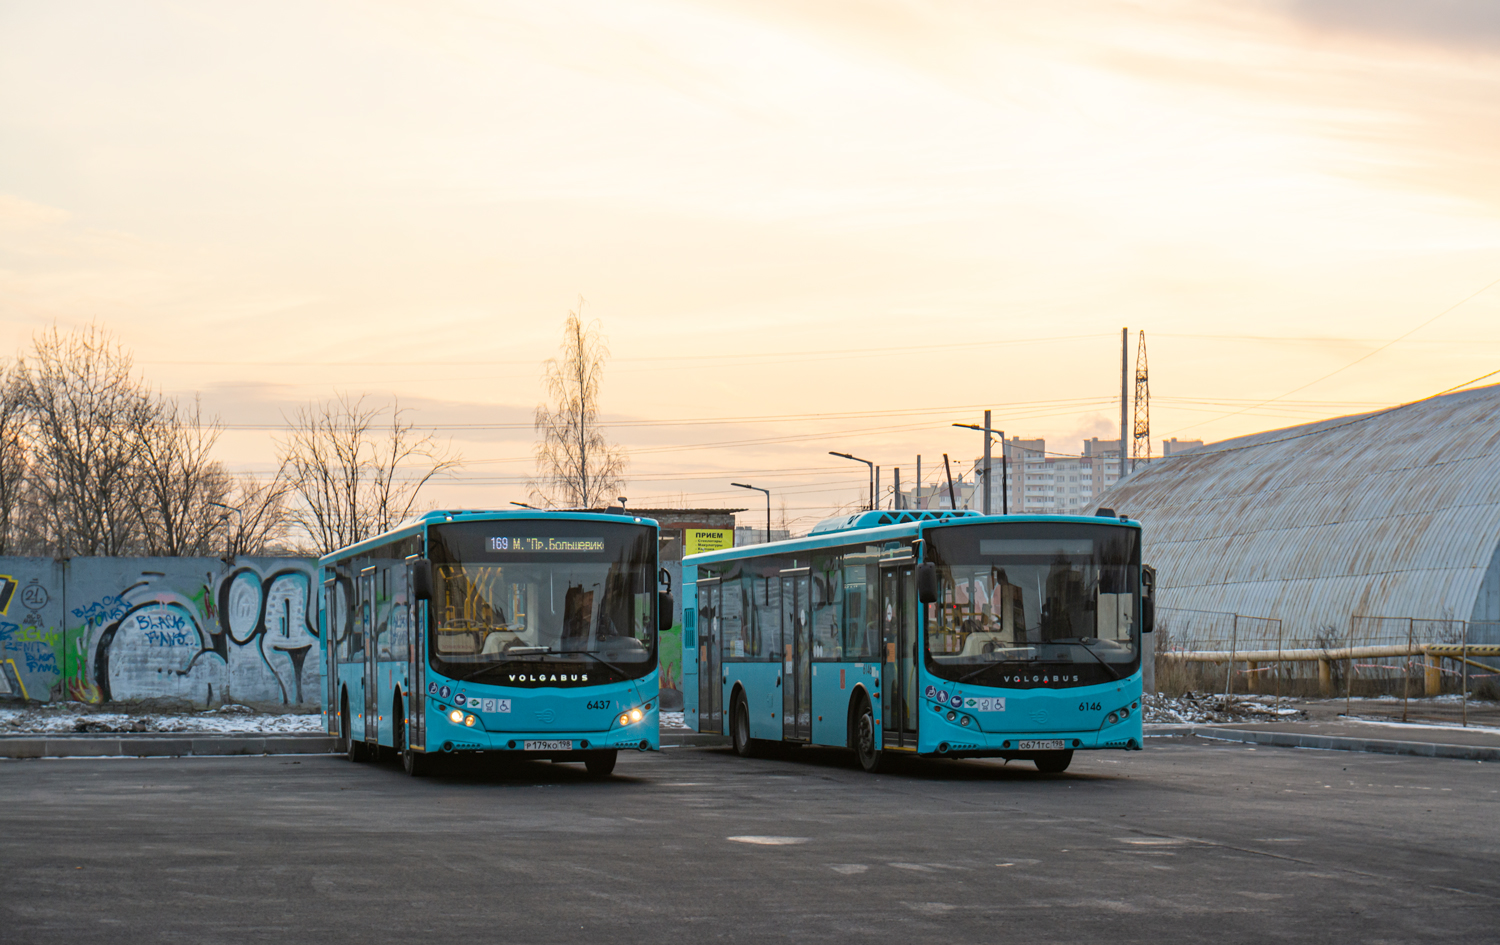 Pietari, Volgabus-5270.G2 (LNG) # 6437; Pietari, Volgabus-5270.G2 (LNG) # 6146